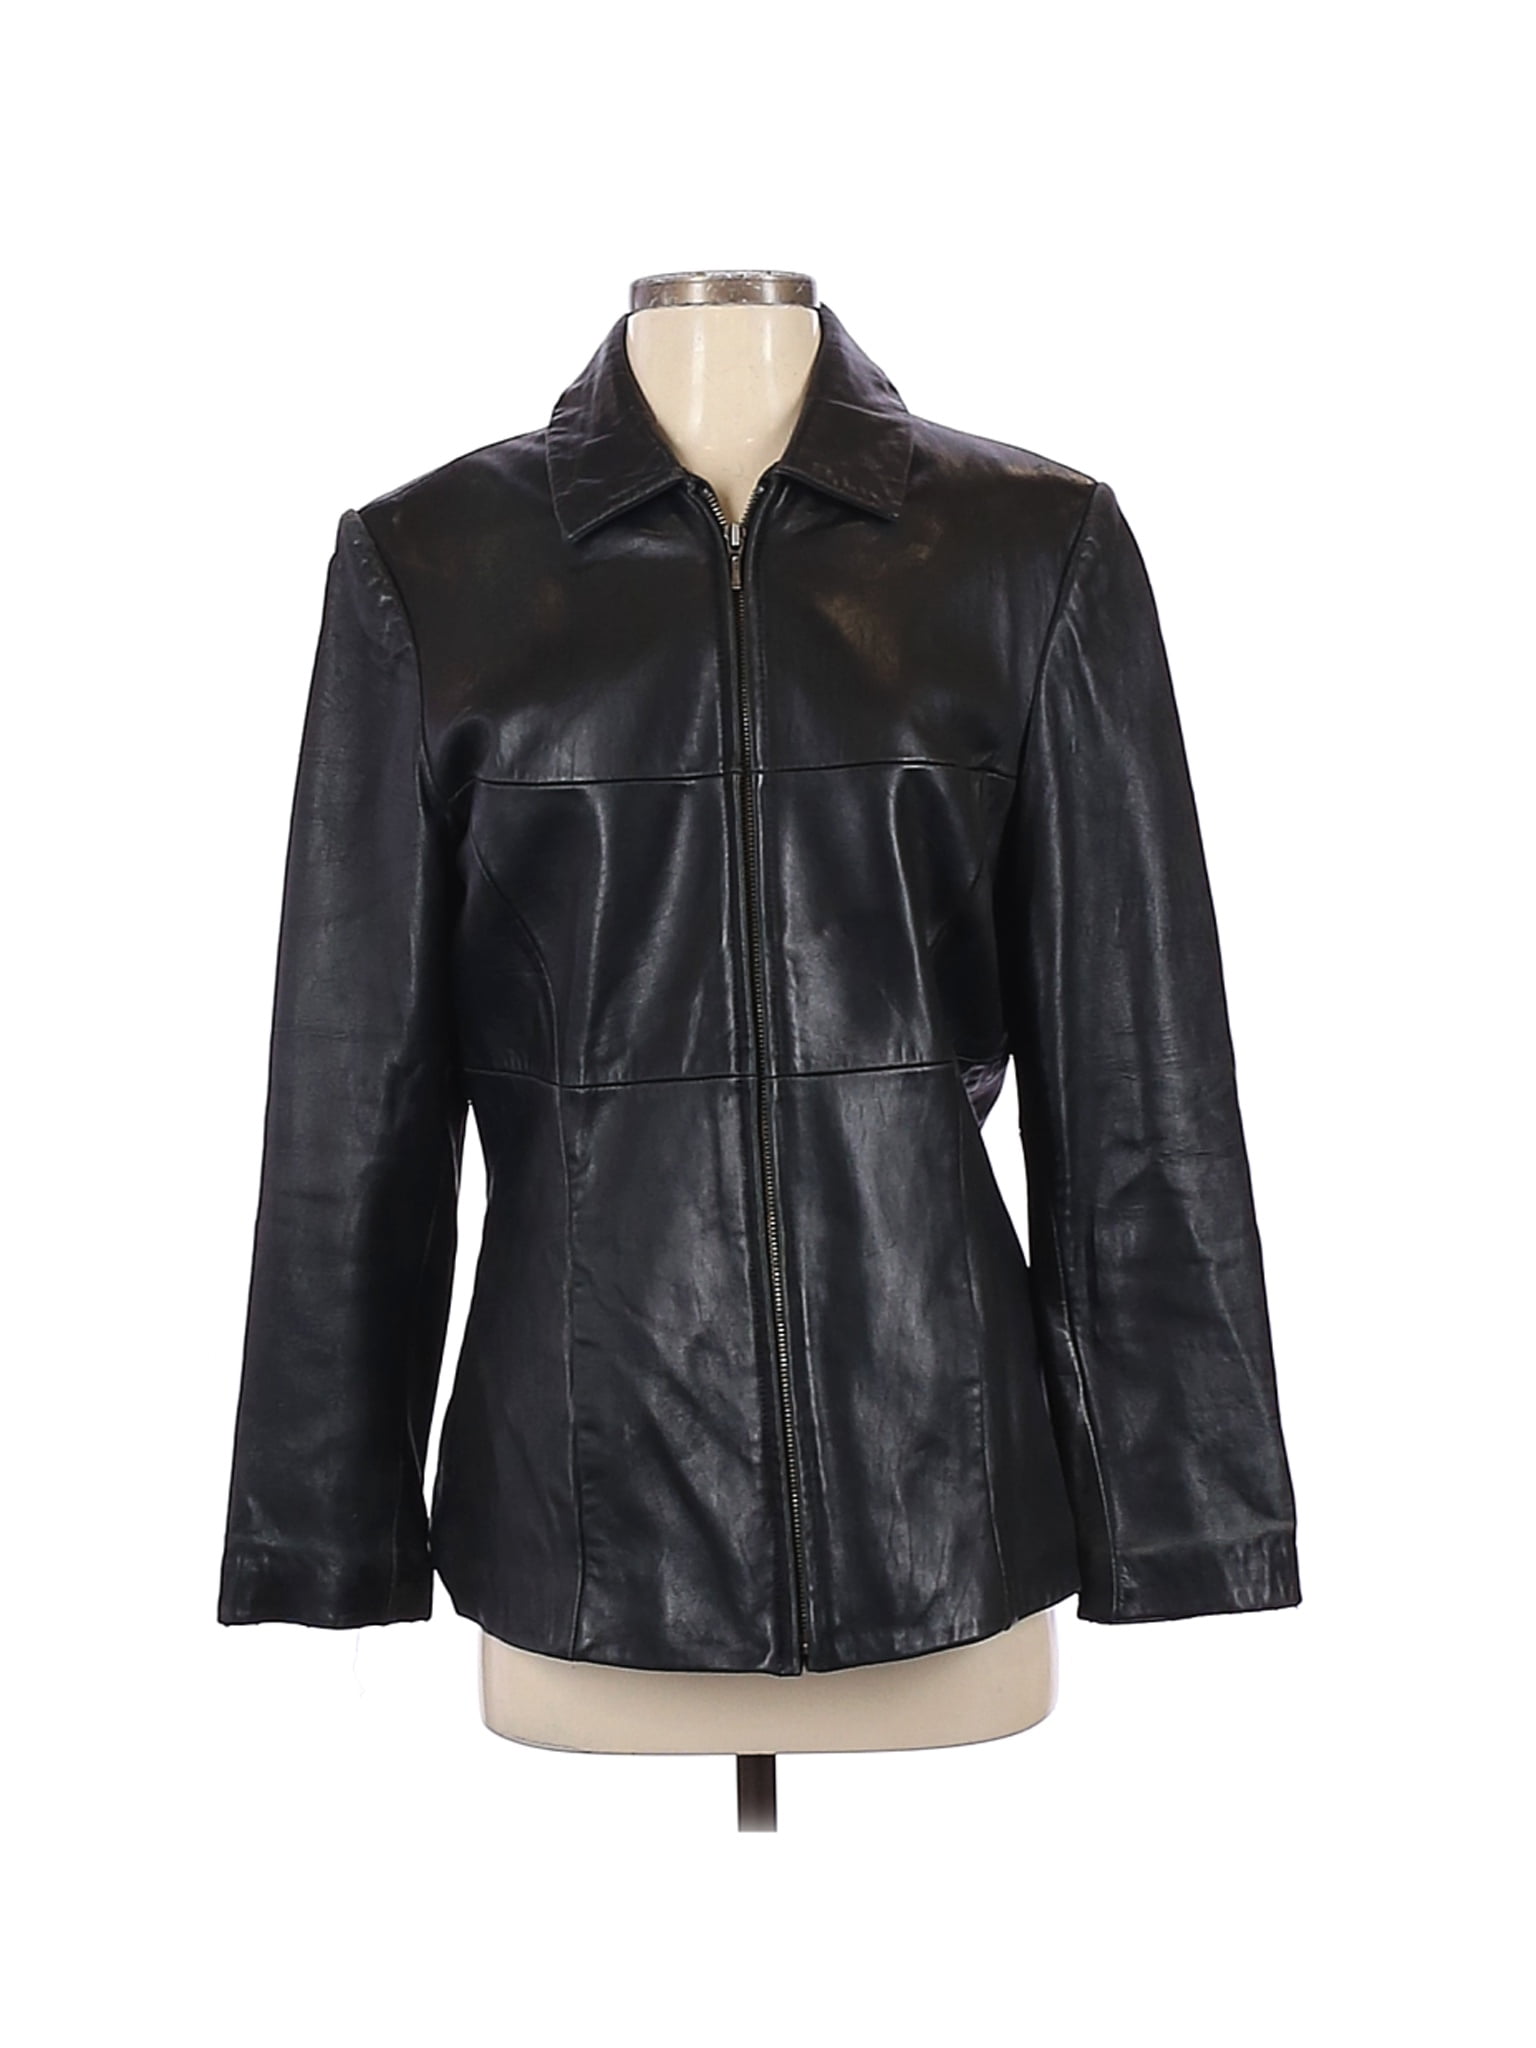 merona leather jacket